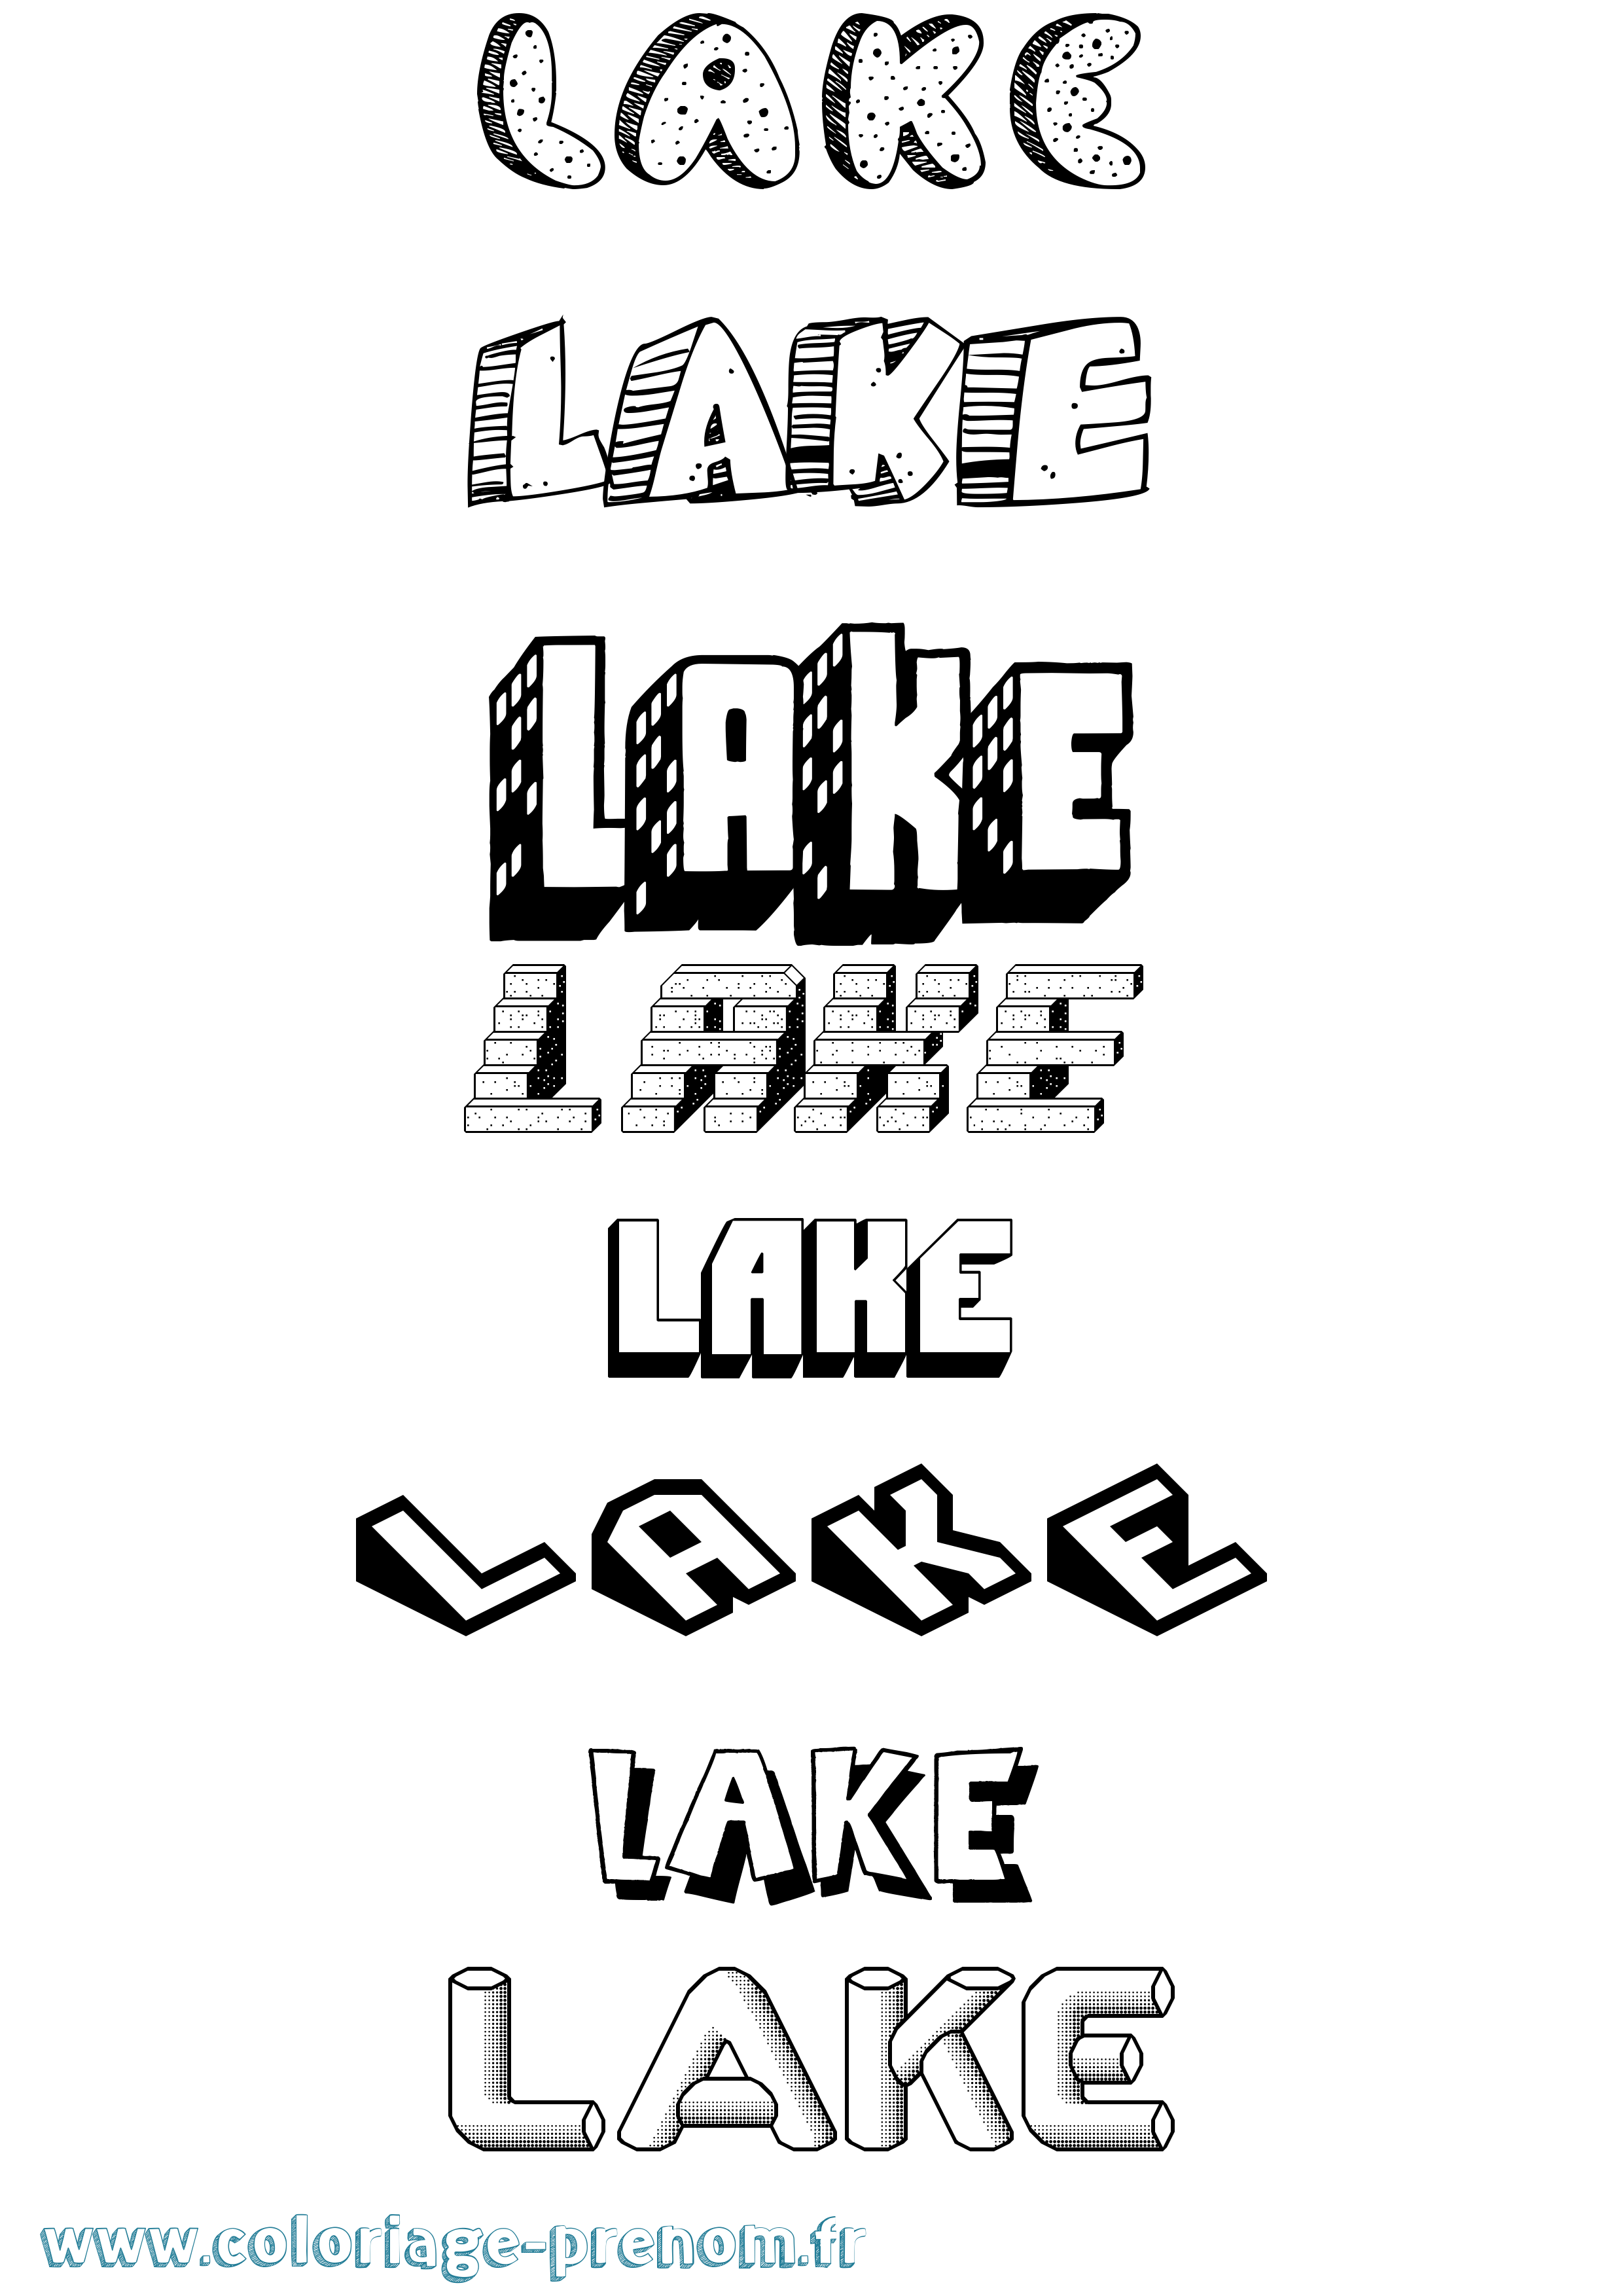 Coloriage prénom Lake Effet 3D